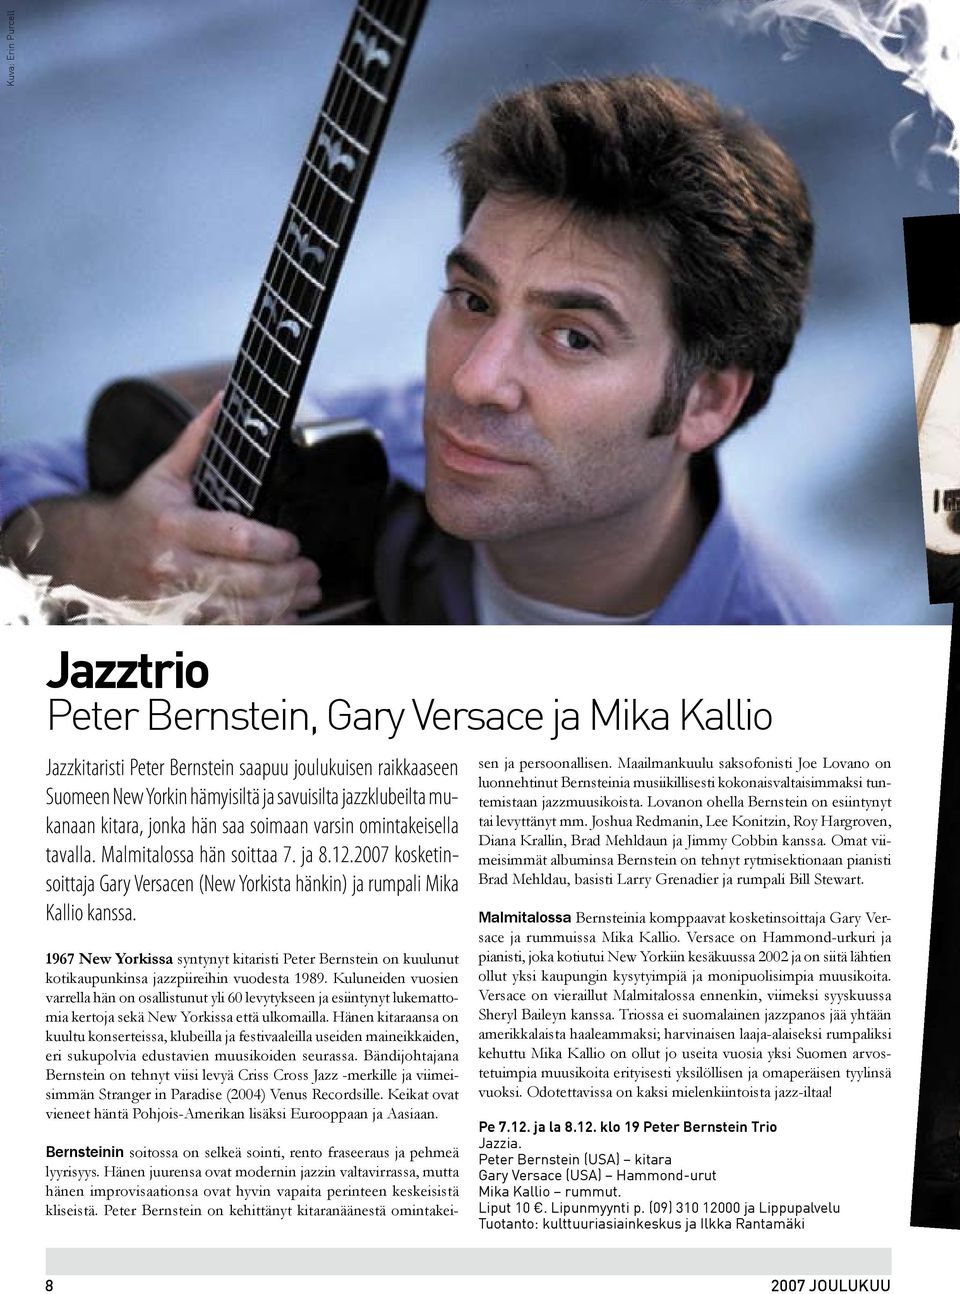 1967 New Yorkissa syntynyt kitaristi Peter Bernstein on kuulunut kotikaupunkinsa jazzpiireihin vuodesta 1989.